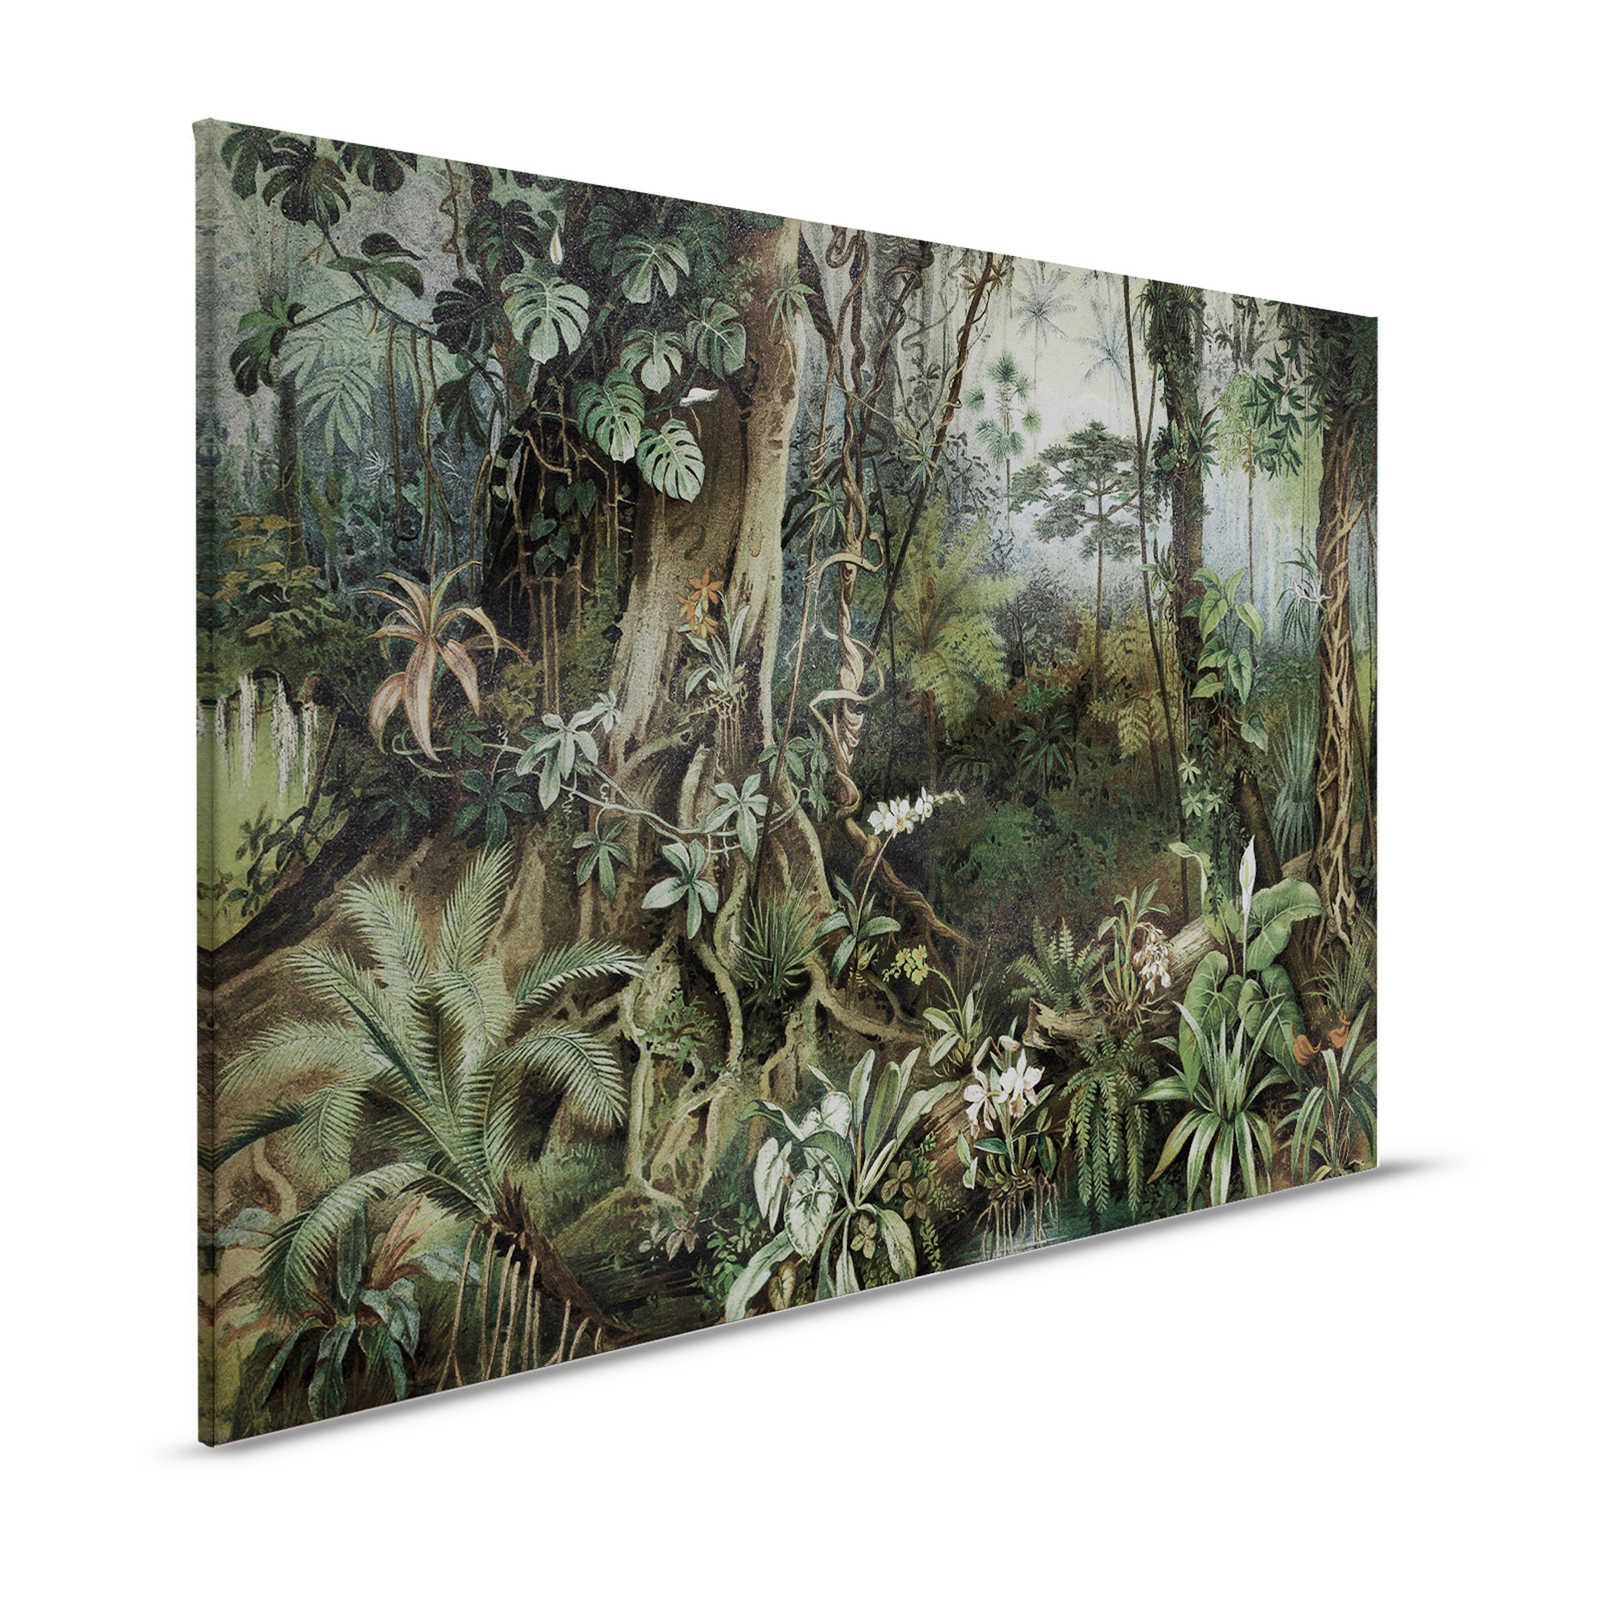 Dschungel Leinwandbild im Zeichenstil – 1,20 m x 0,80 m
